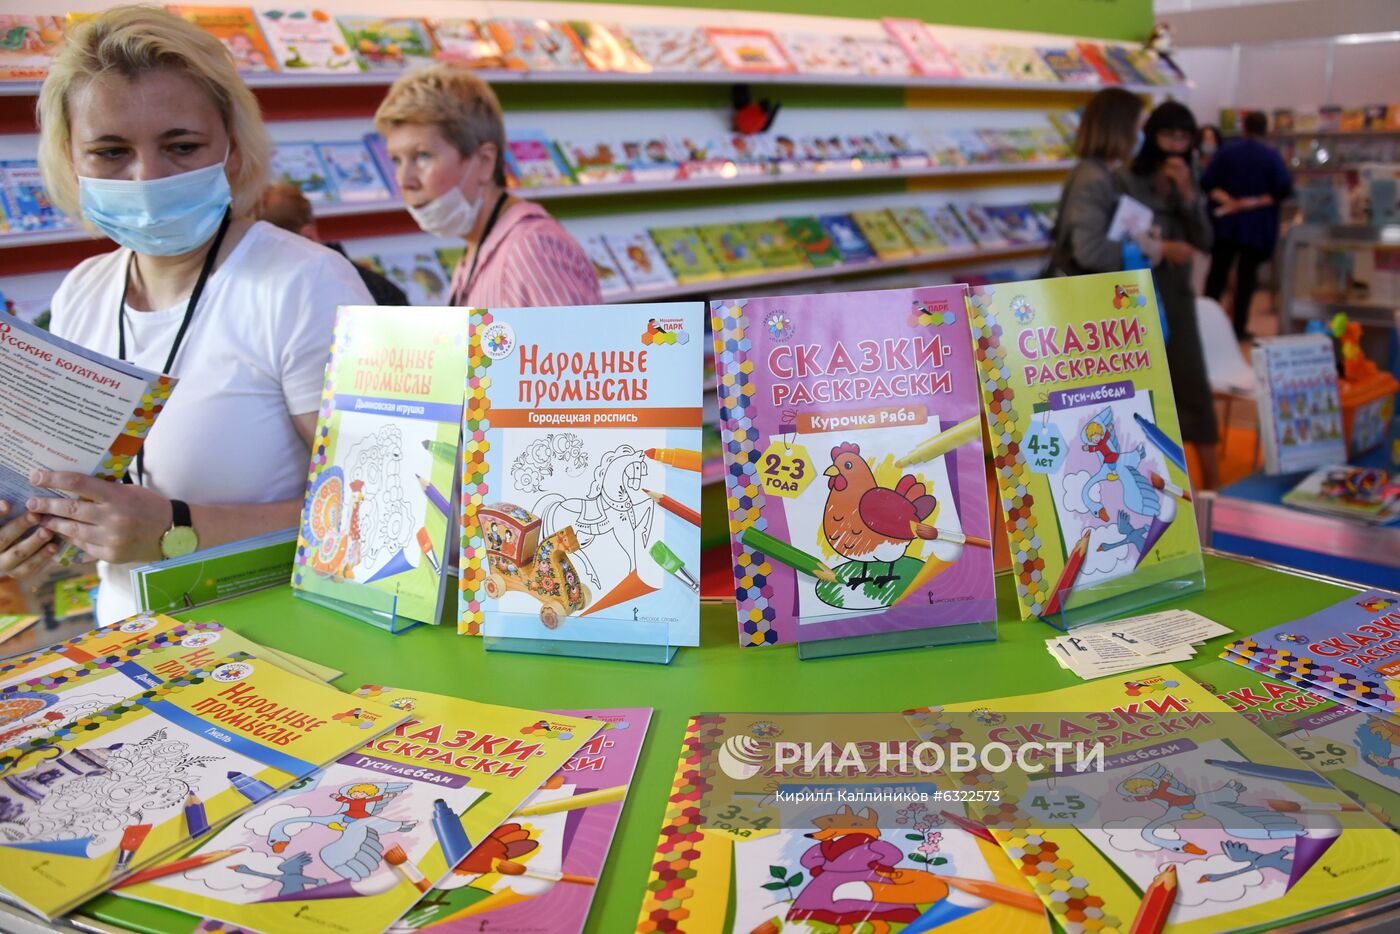 33-я Московская международная книжная ярмарка